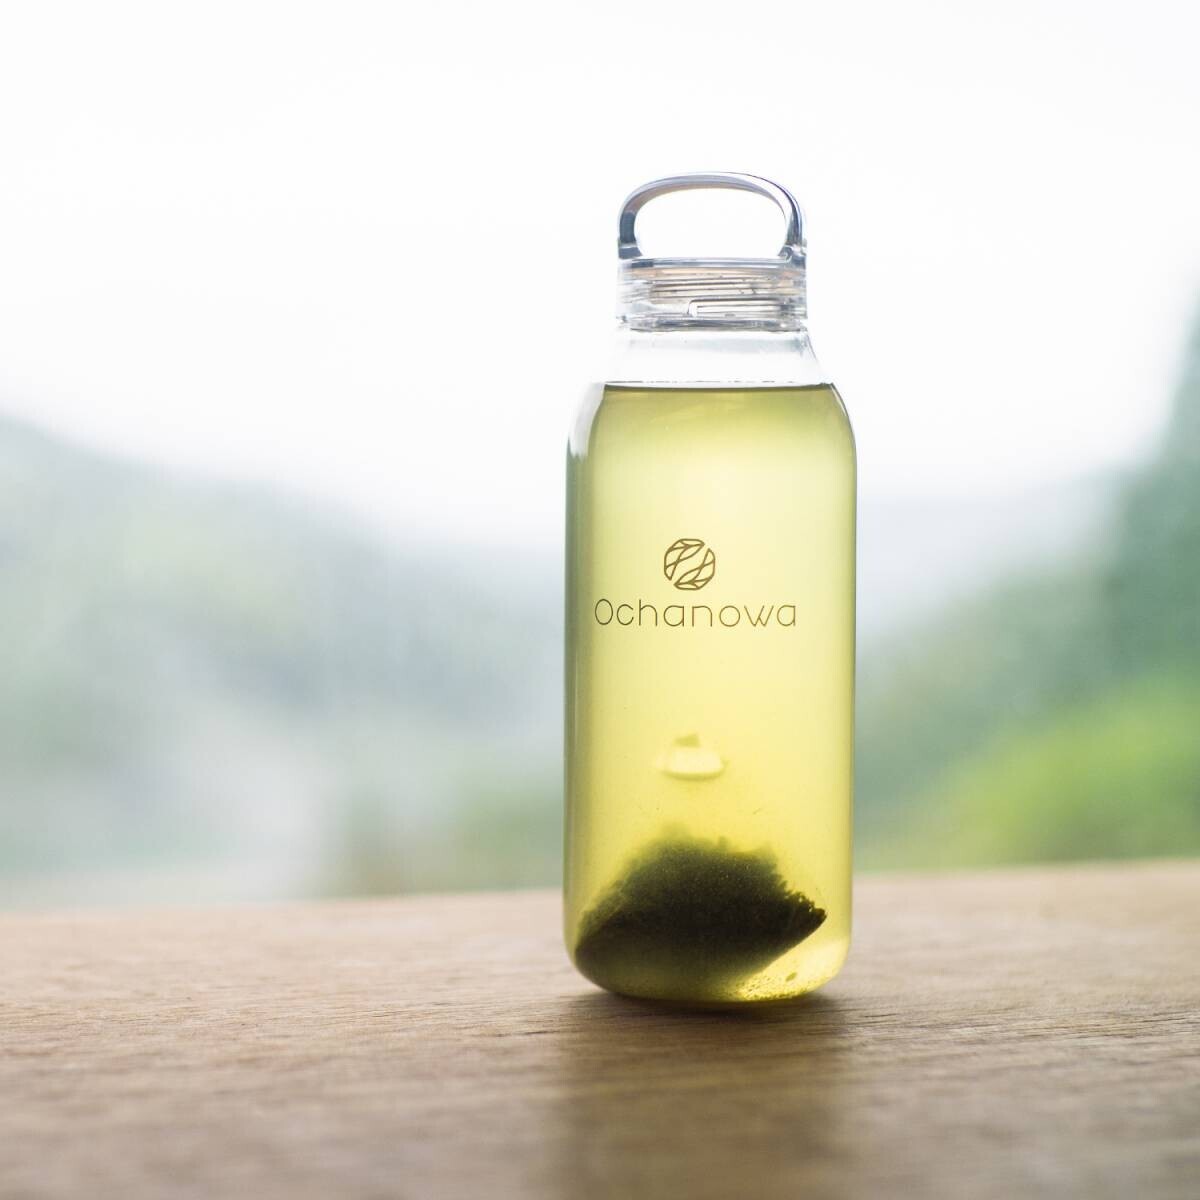 耕作放棄地を減らし、オーガニック日本茶を増やす。サスティナブルお茶ブランドOchanowa 新商品ラインナップを7月1日より発売開始